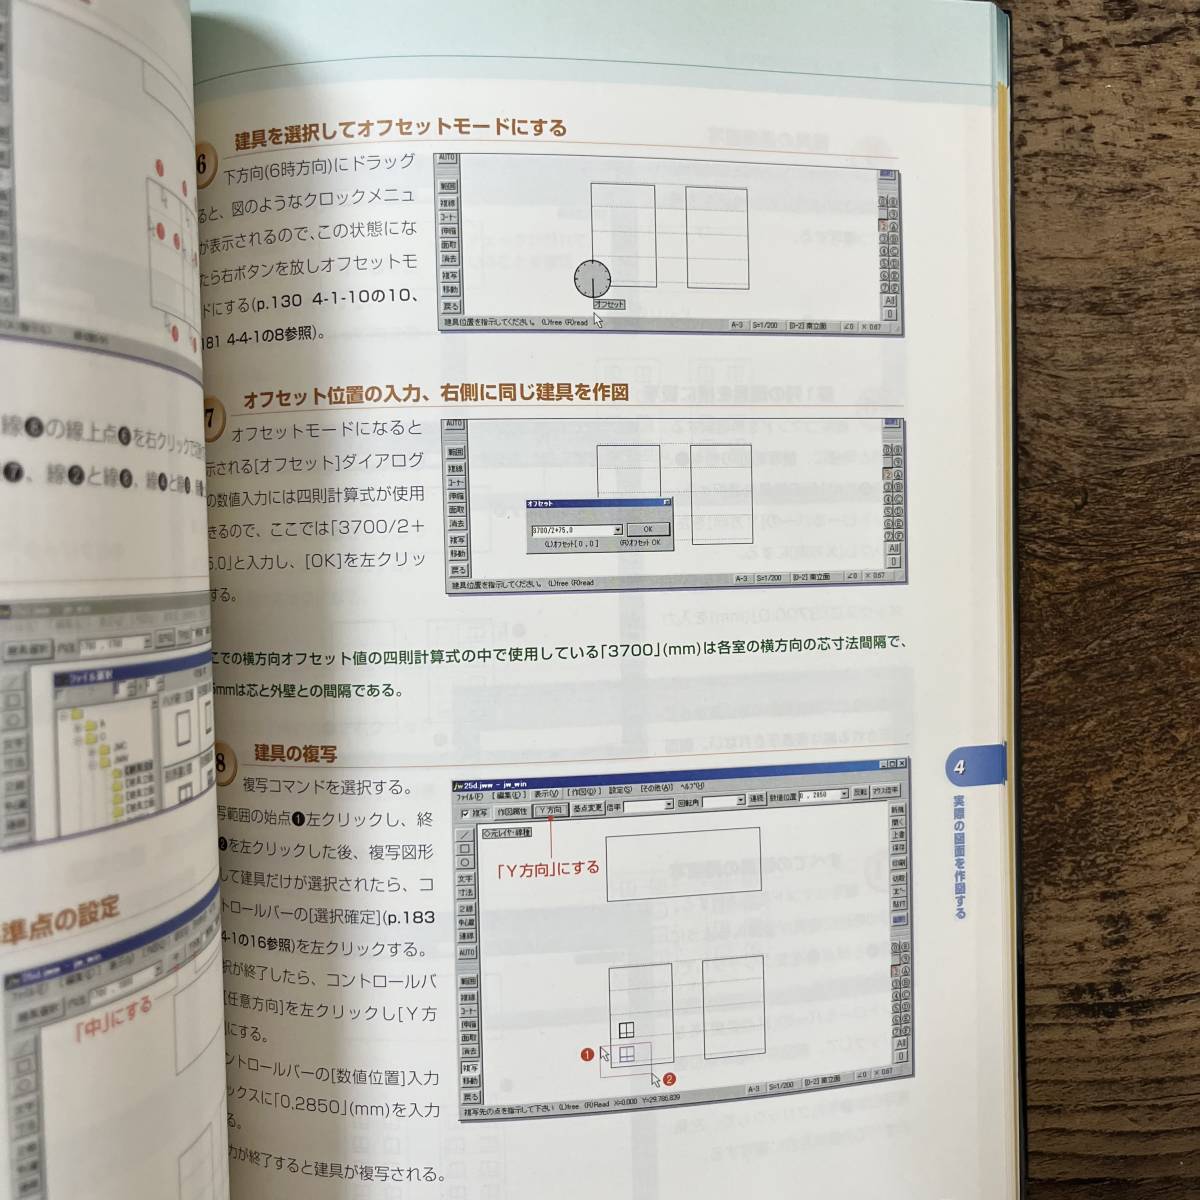 J-2832#Jw_cad for windows тщательный описание - функционирование сборник -#CD-ROM есть #Jiro Shimizu+Yoshifumi Tanaka/ работа # X знания #2001 год 9 месяц 1 день #